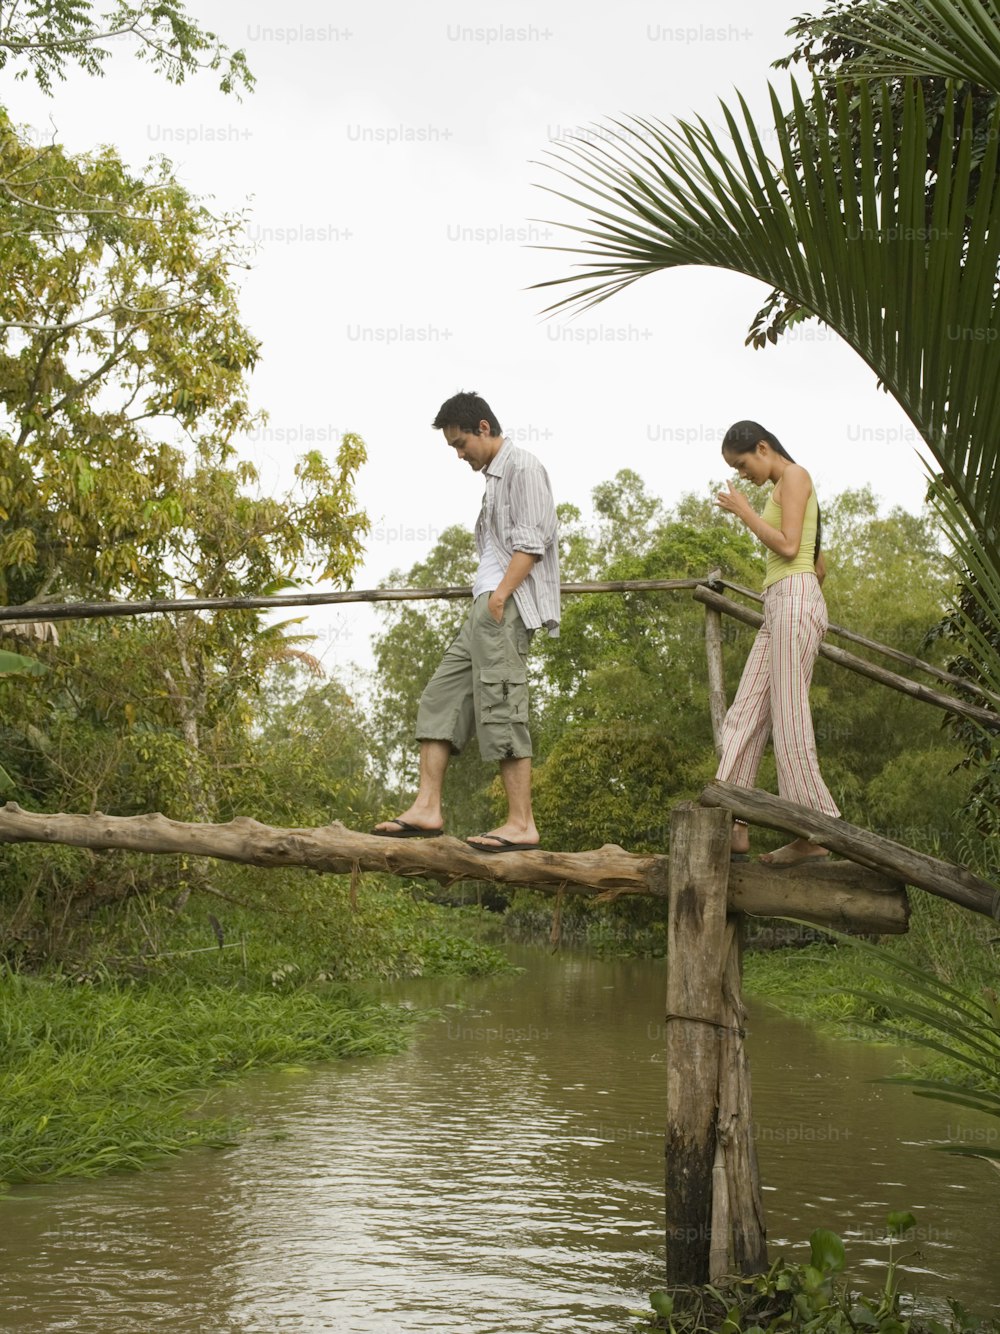 Un uomo e una donna che camminano attraverso un ponte di legno su un fiume